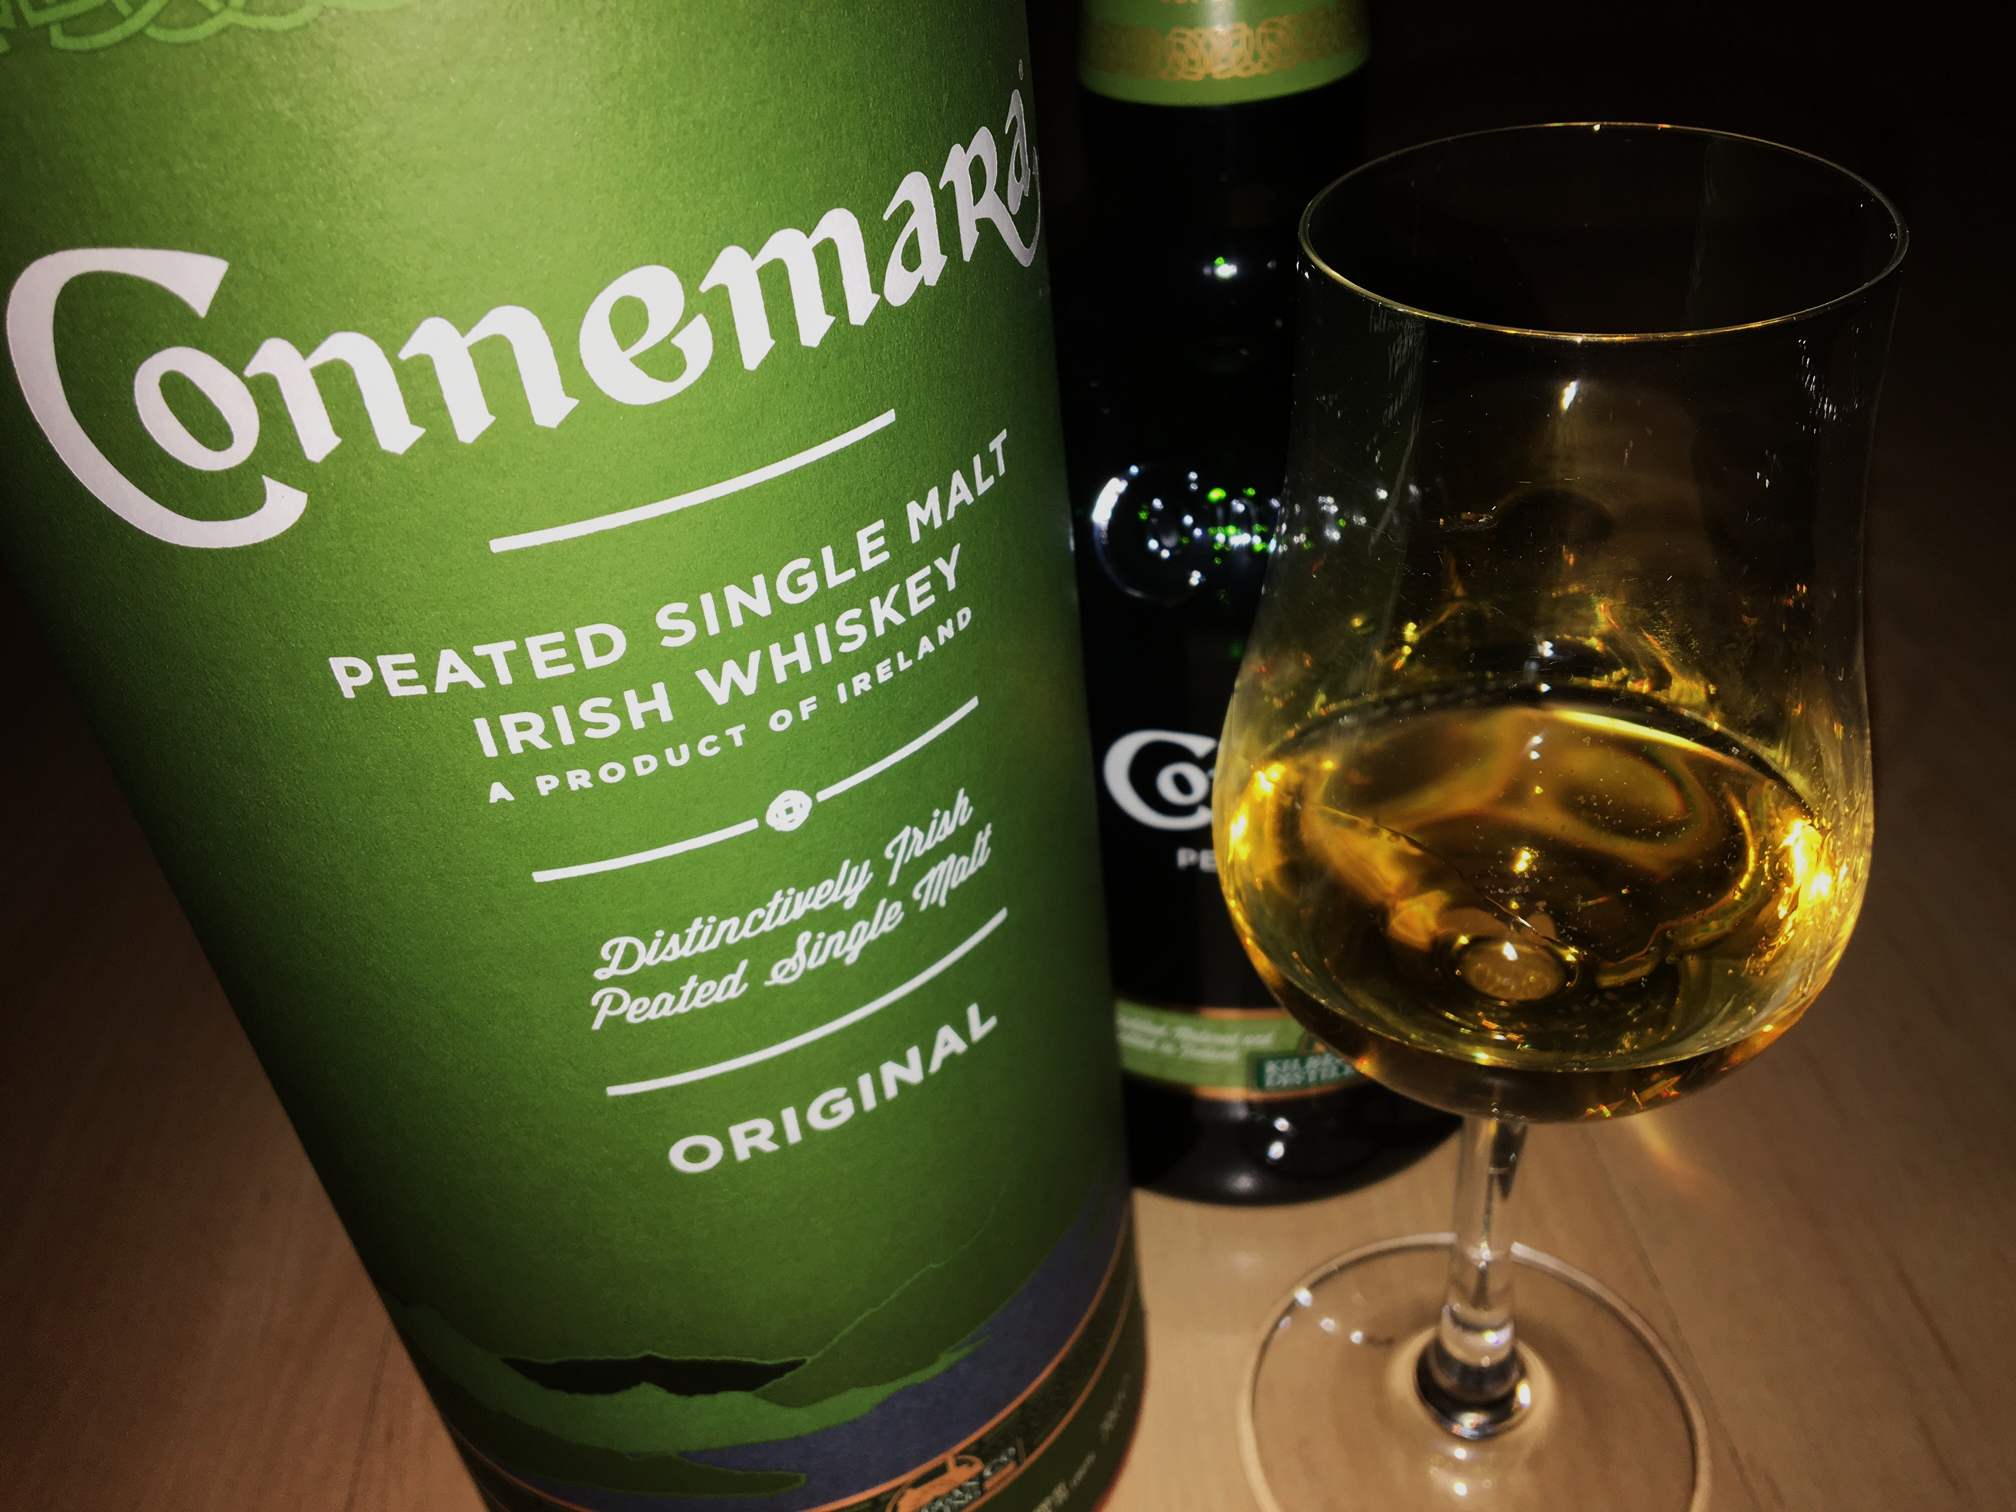 Connemara peated single malt irish whisky - Die besten Connemara peated single malt irish whisky im Überblick!